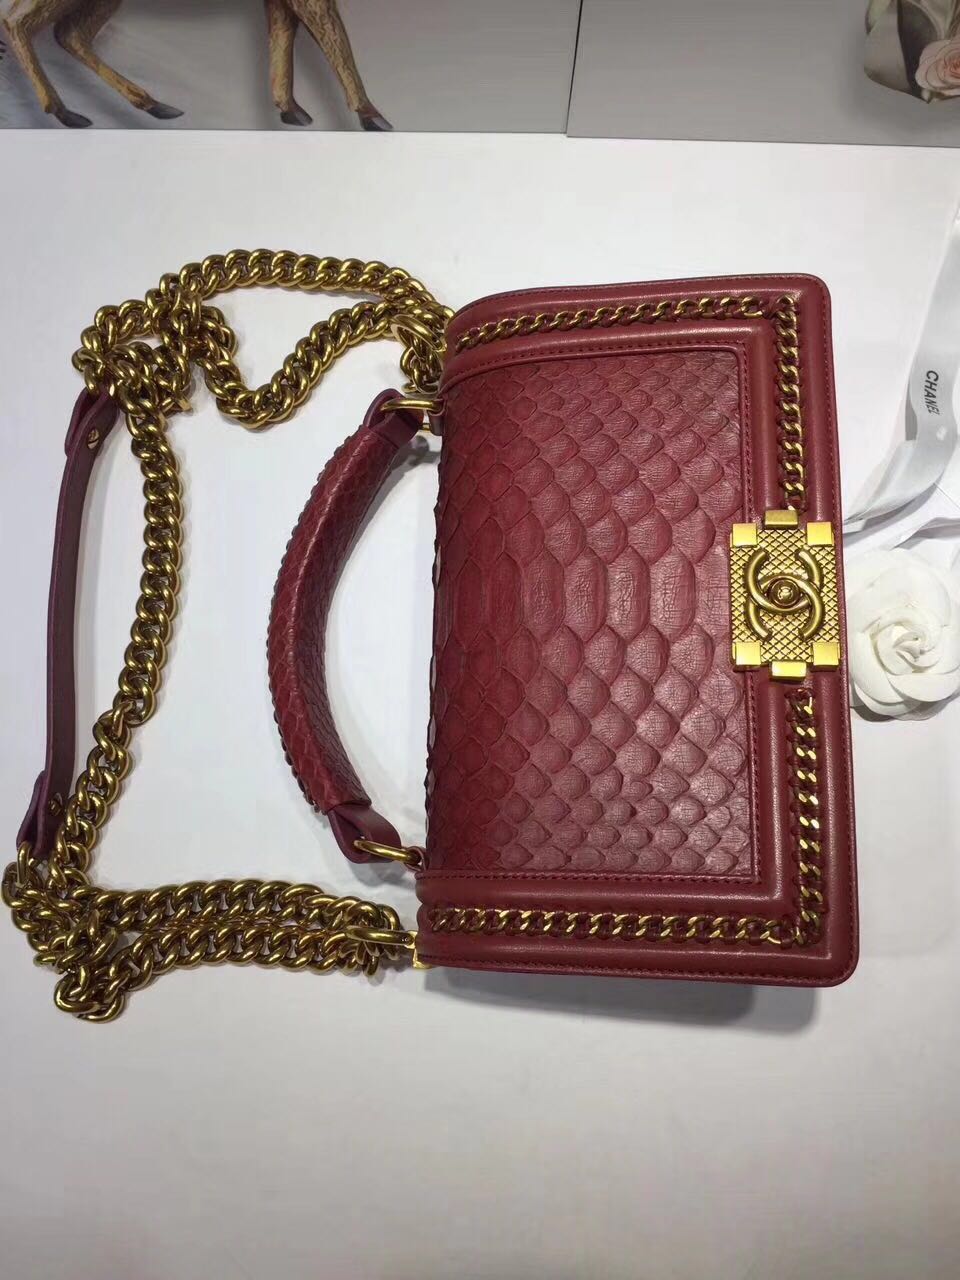 Boy Chanel Flap Shoulder Bag original Snake leather 67086 red